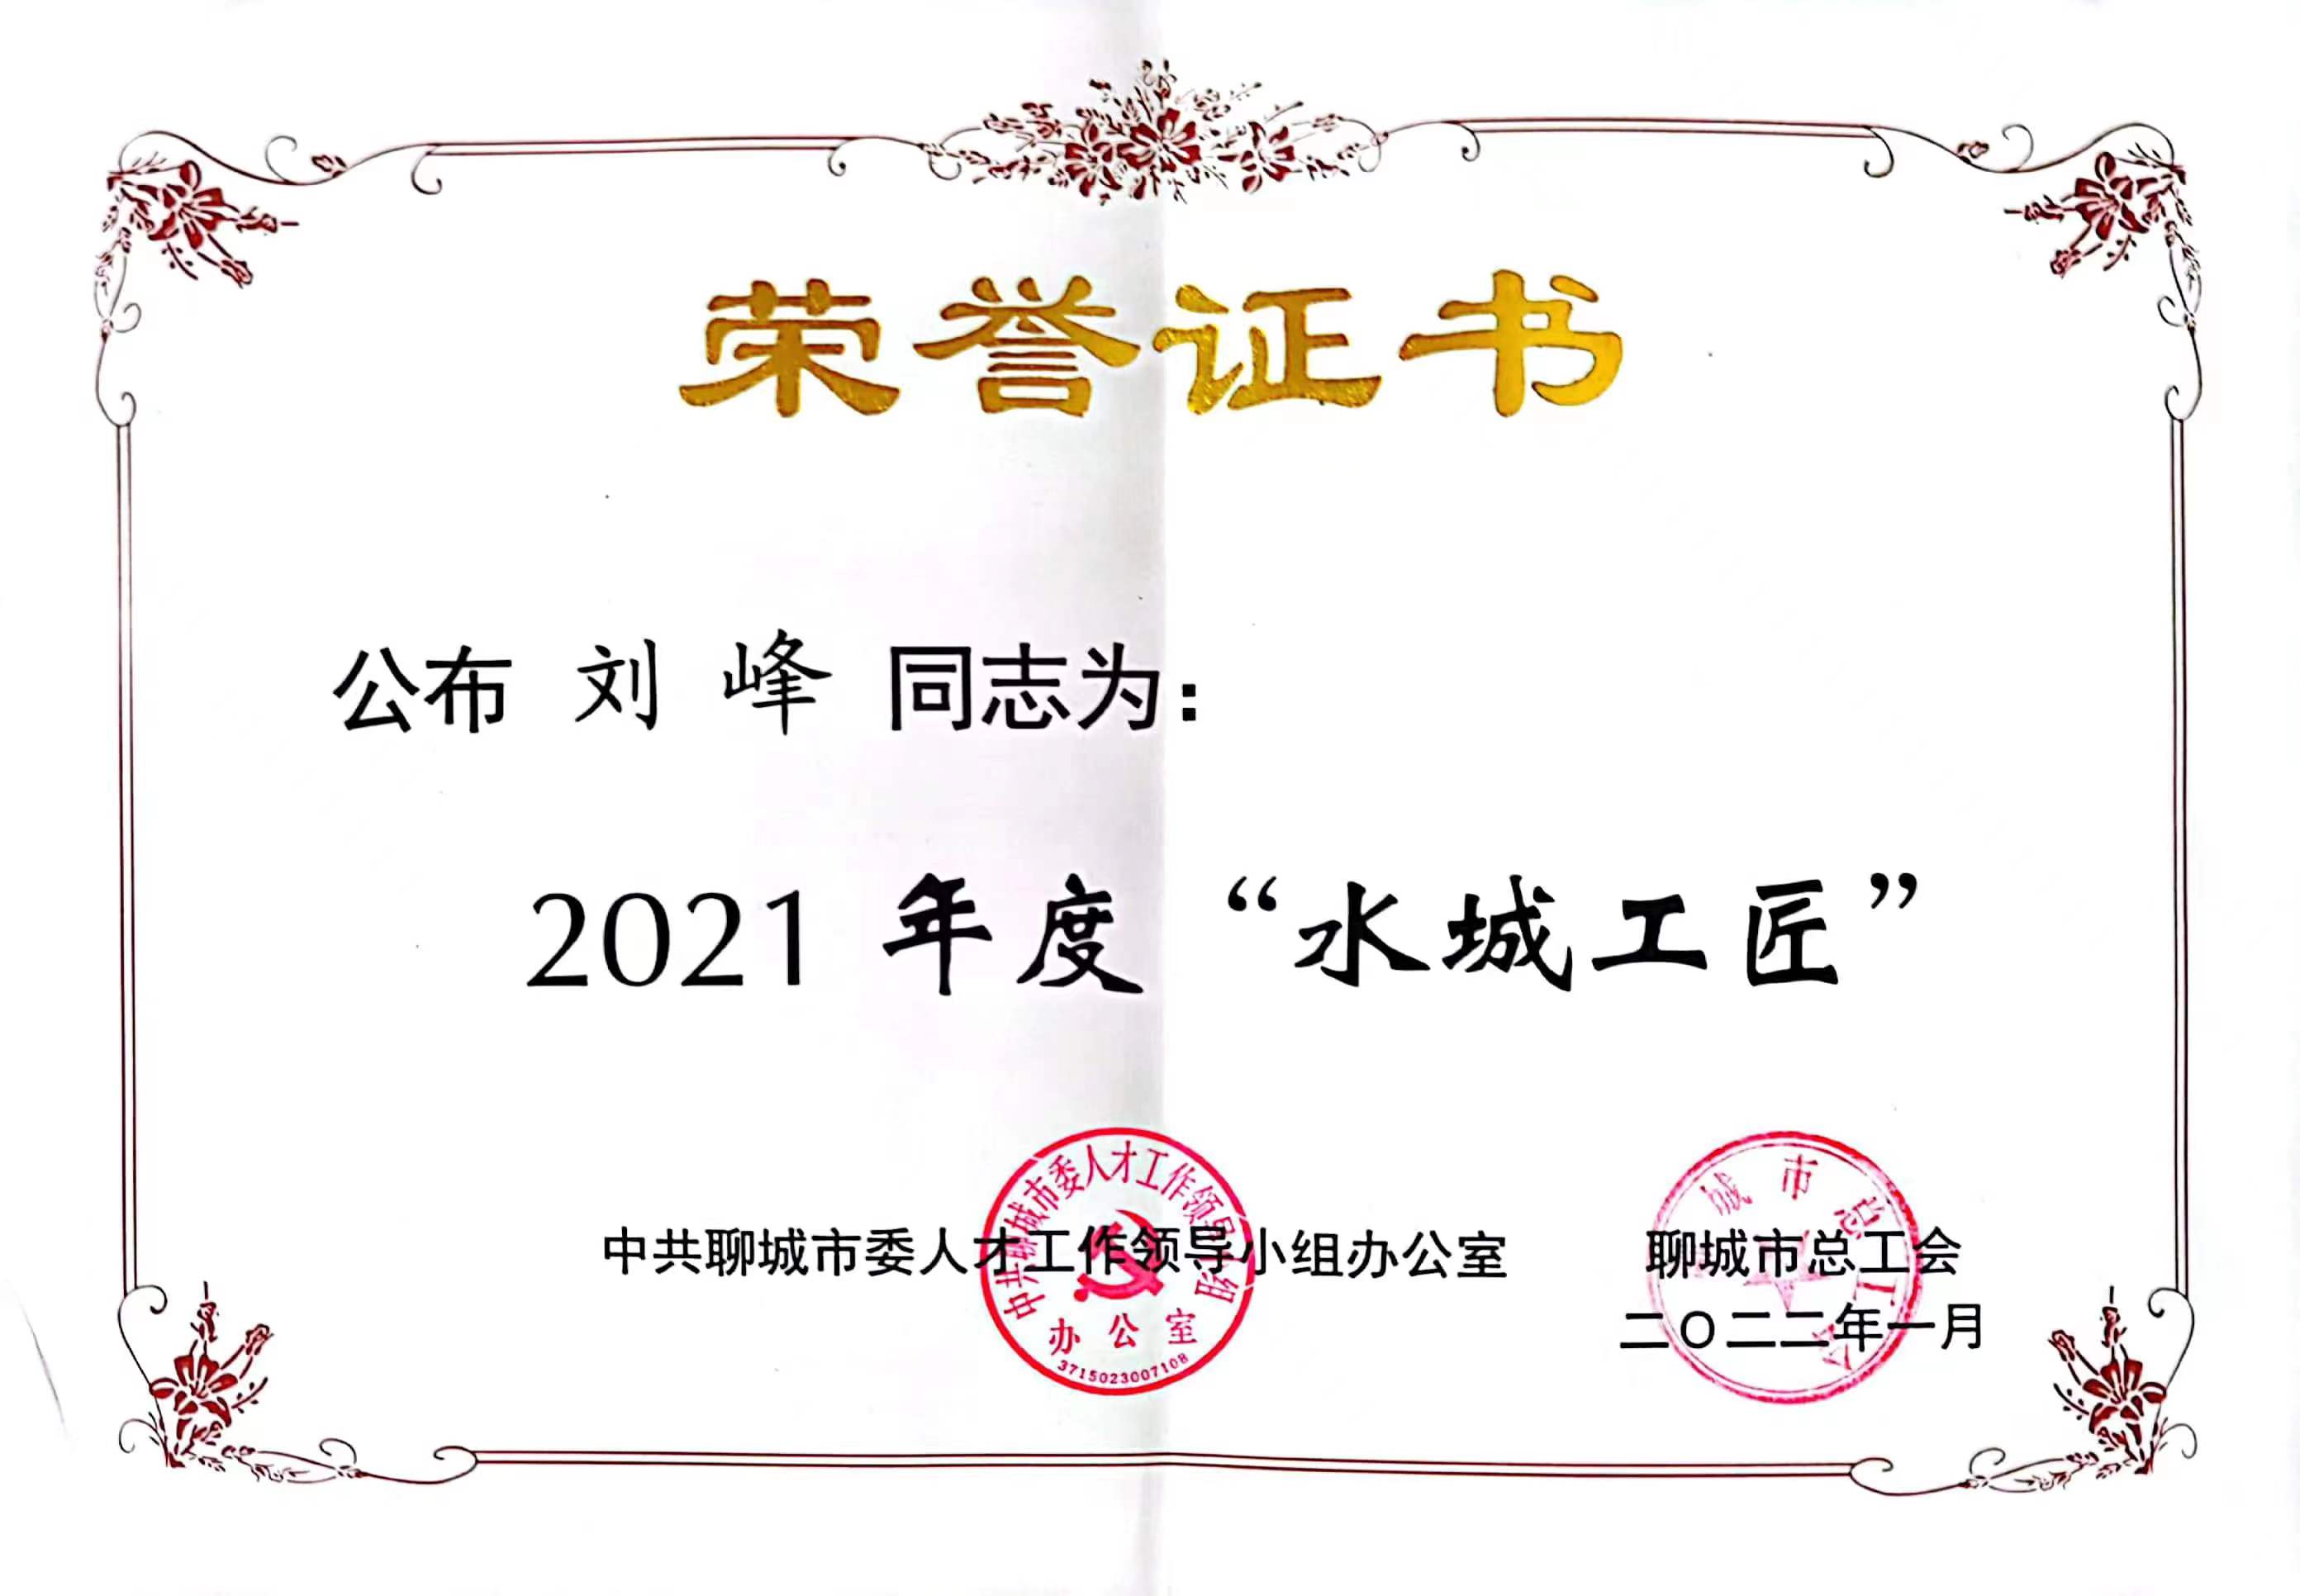 刘峰同志荣获2021年度‘水城工匠’称号